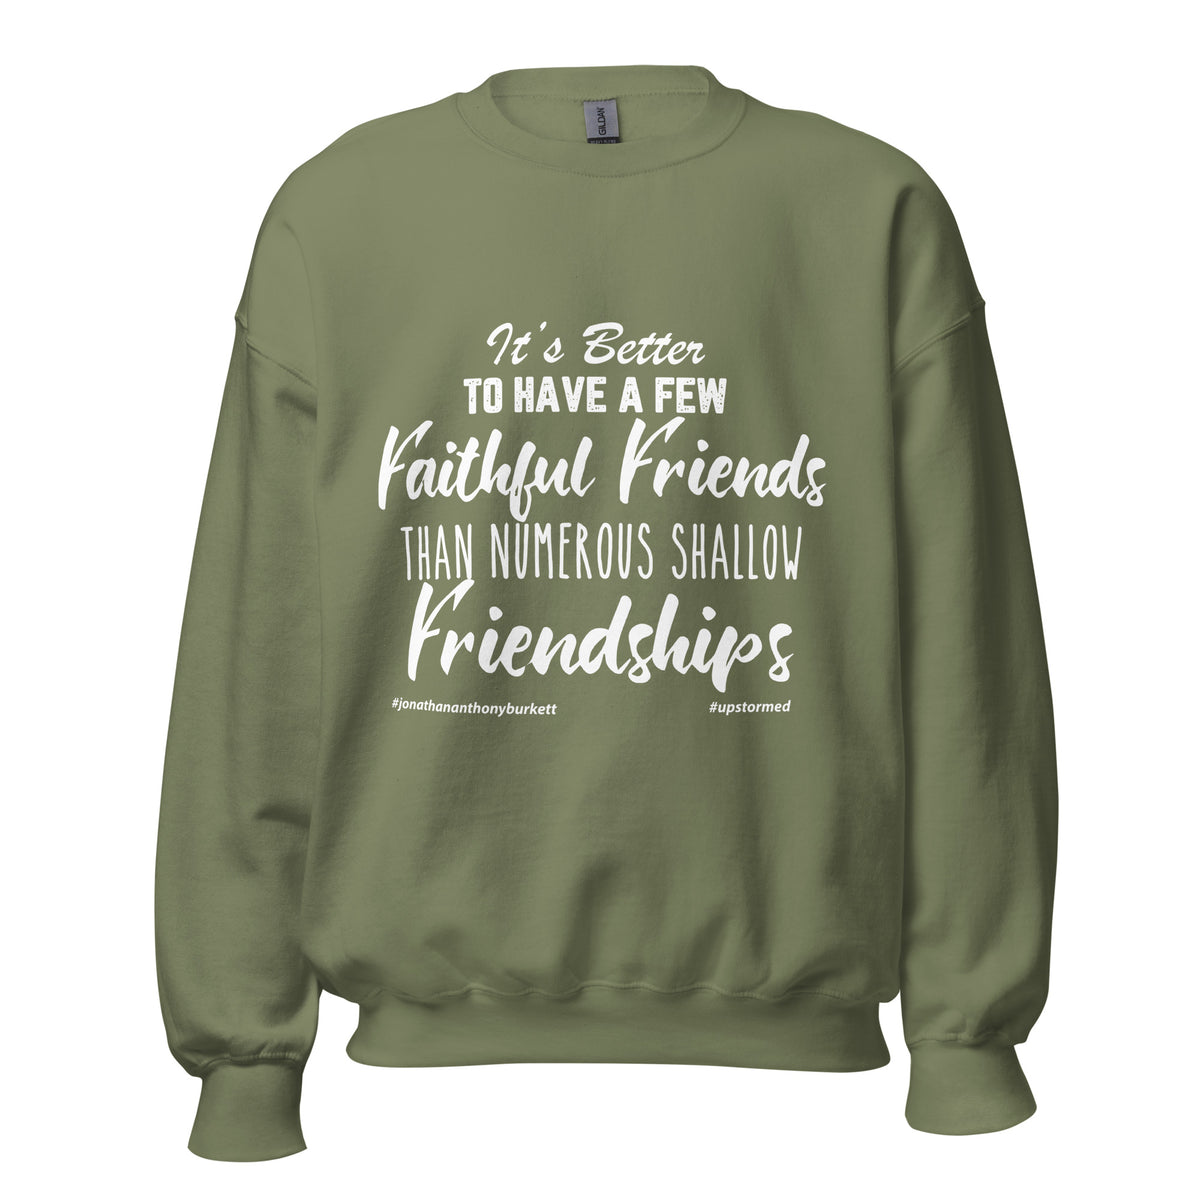 It’s Better To Have Few Faithful Friends Upstormed Sweatshirt